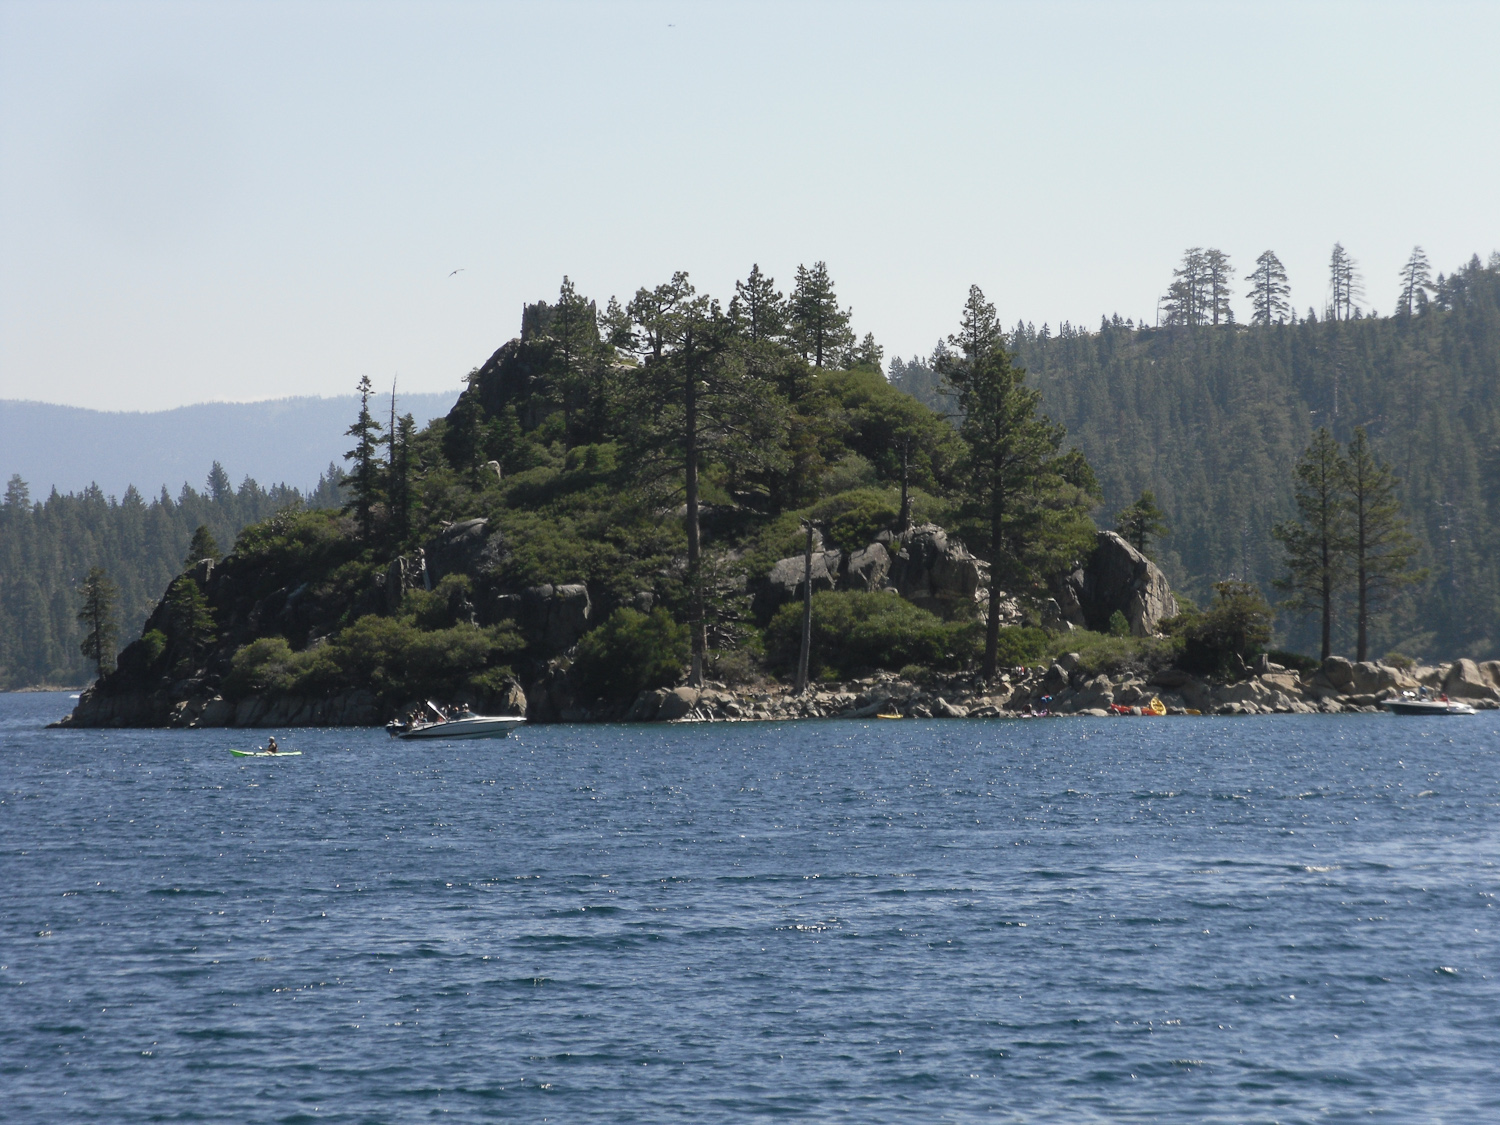 Fannette Island in Emerald Bay